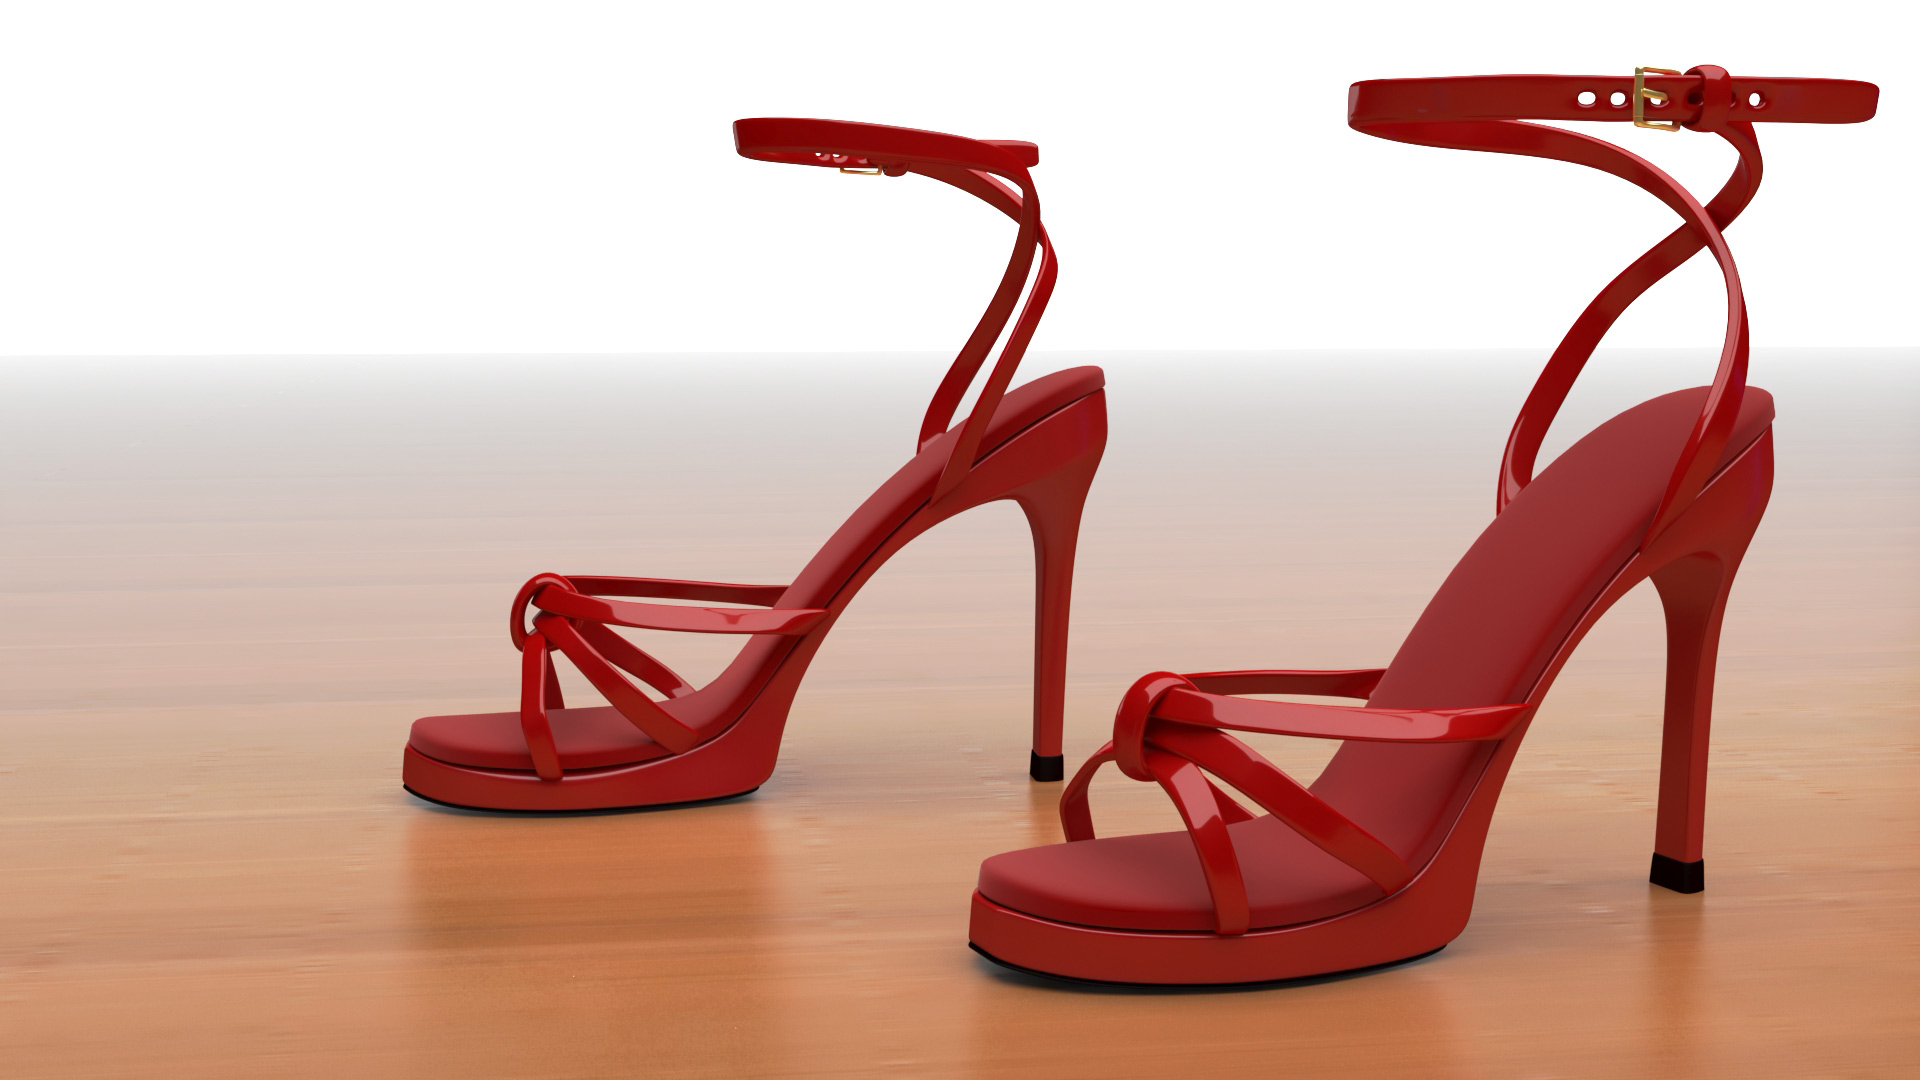 Modélisation 3D de chaussures, sandales à talon - Graphiste 3D freelance